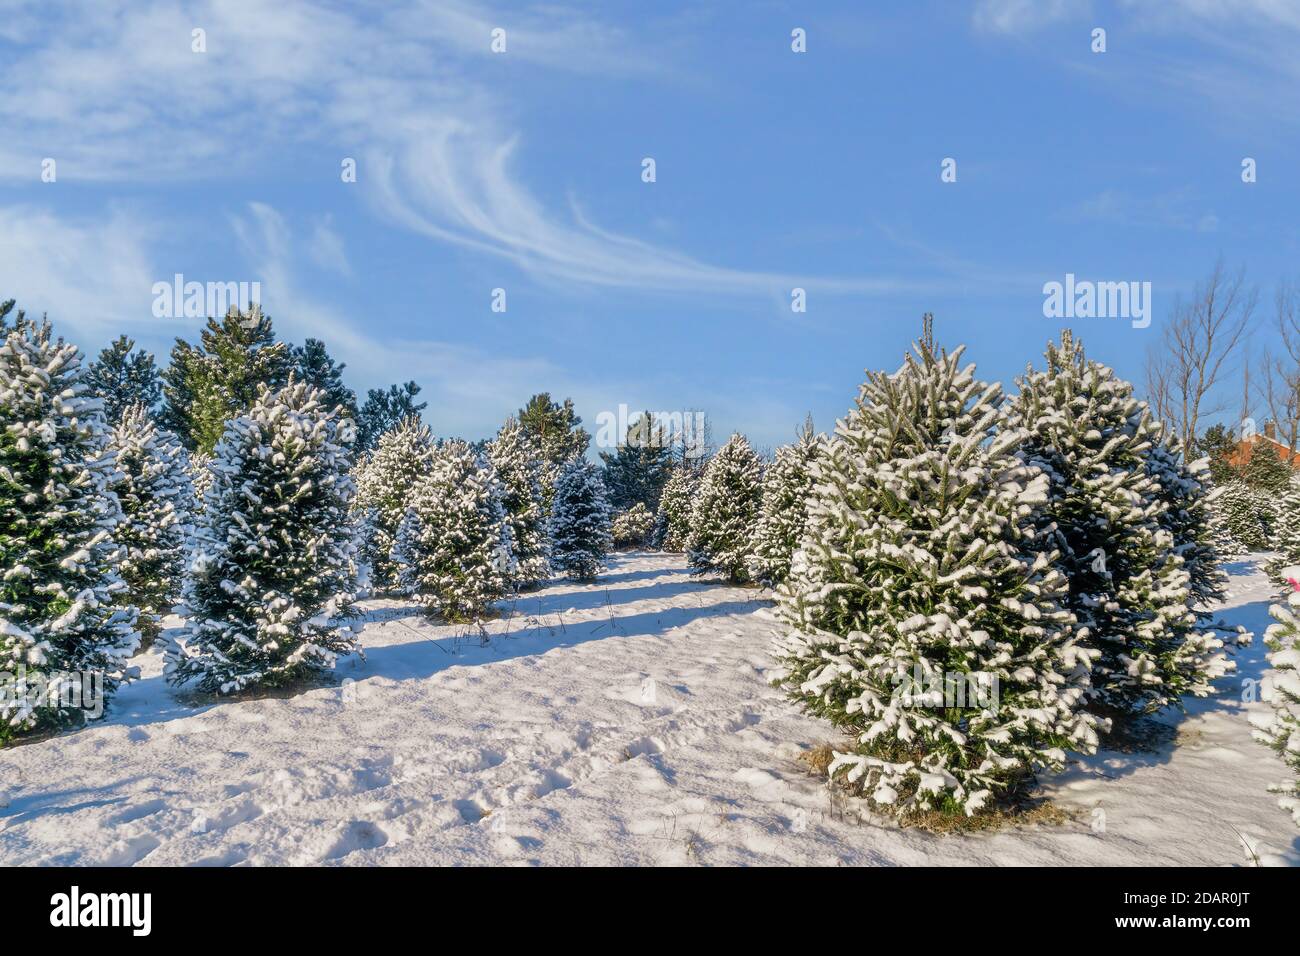 Abeto Balsam en una granja de árboles de Navidad cubierta de una manta de nieve. Foto de stock